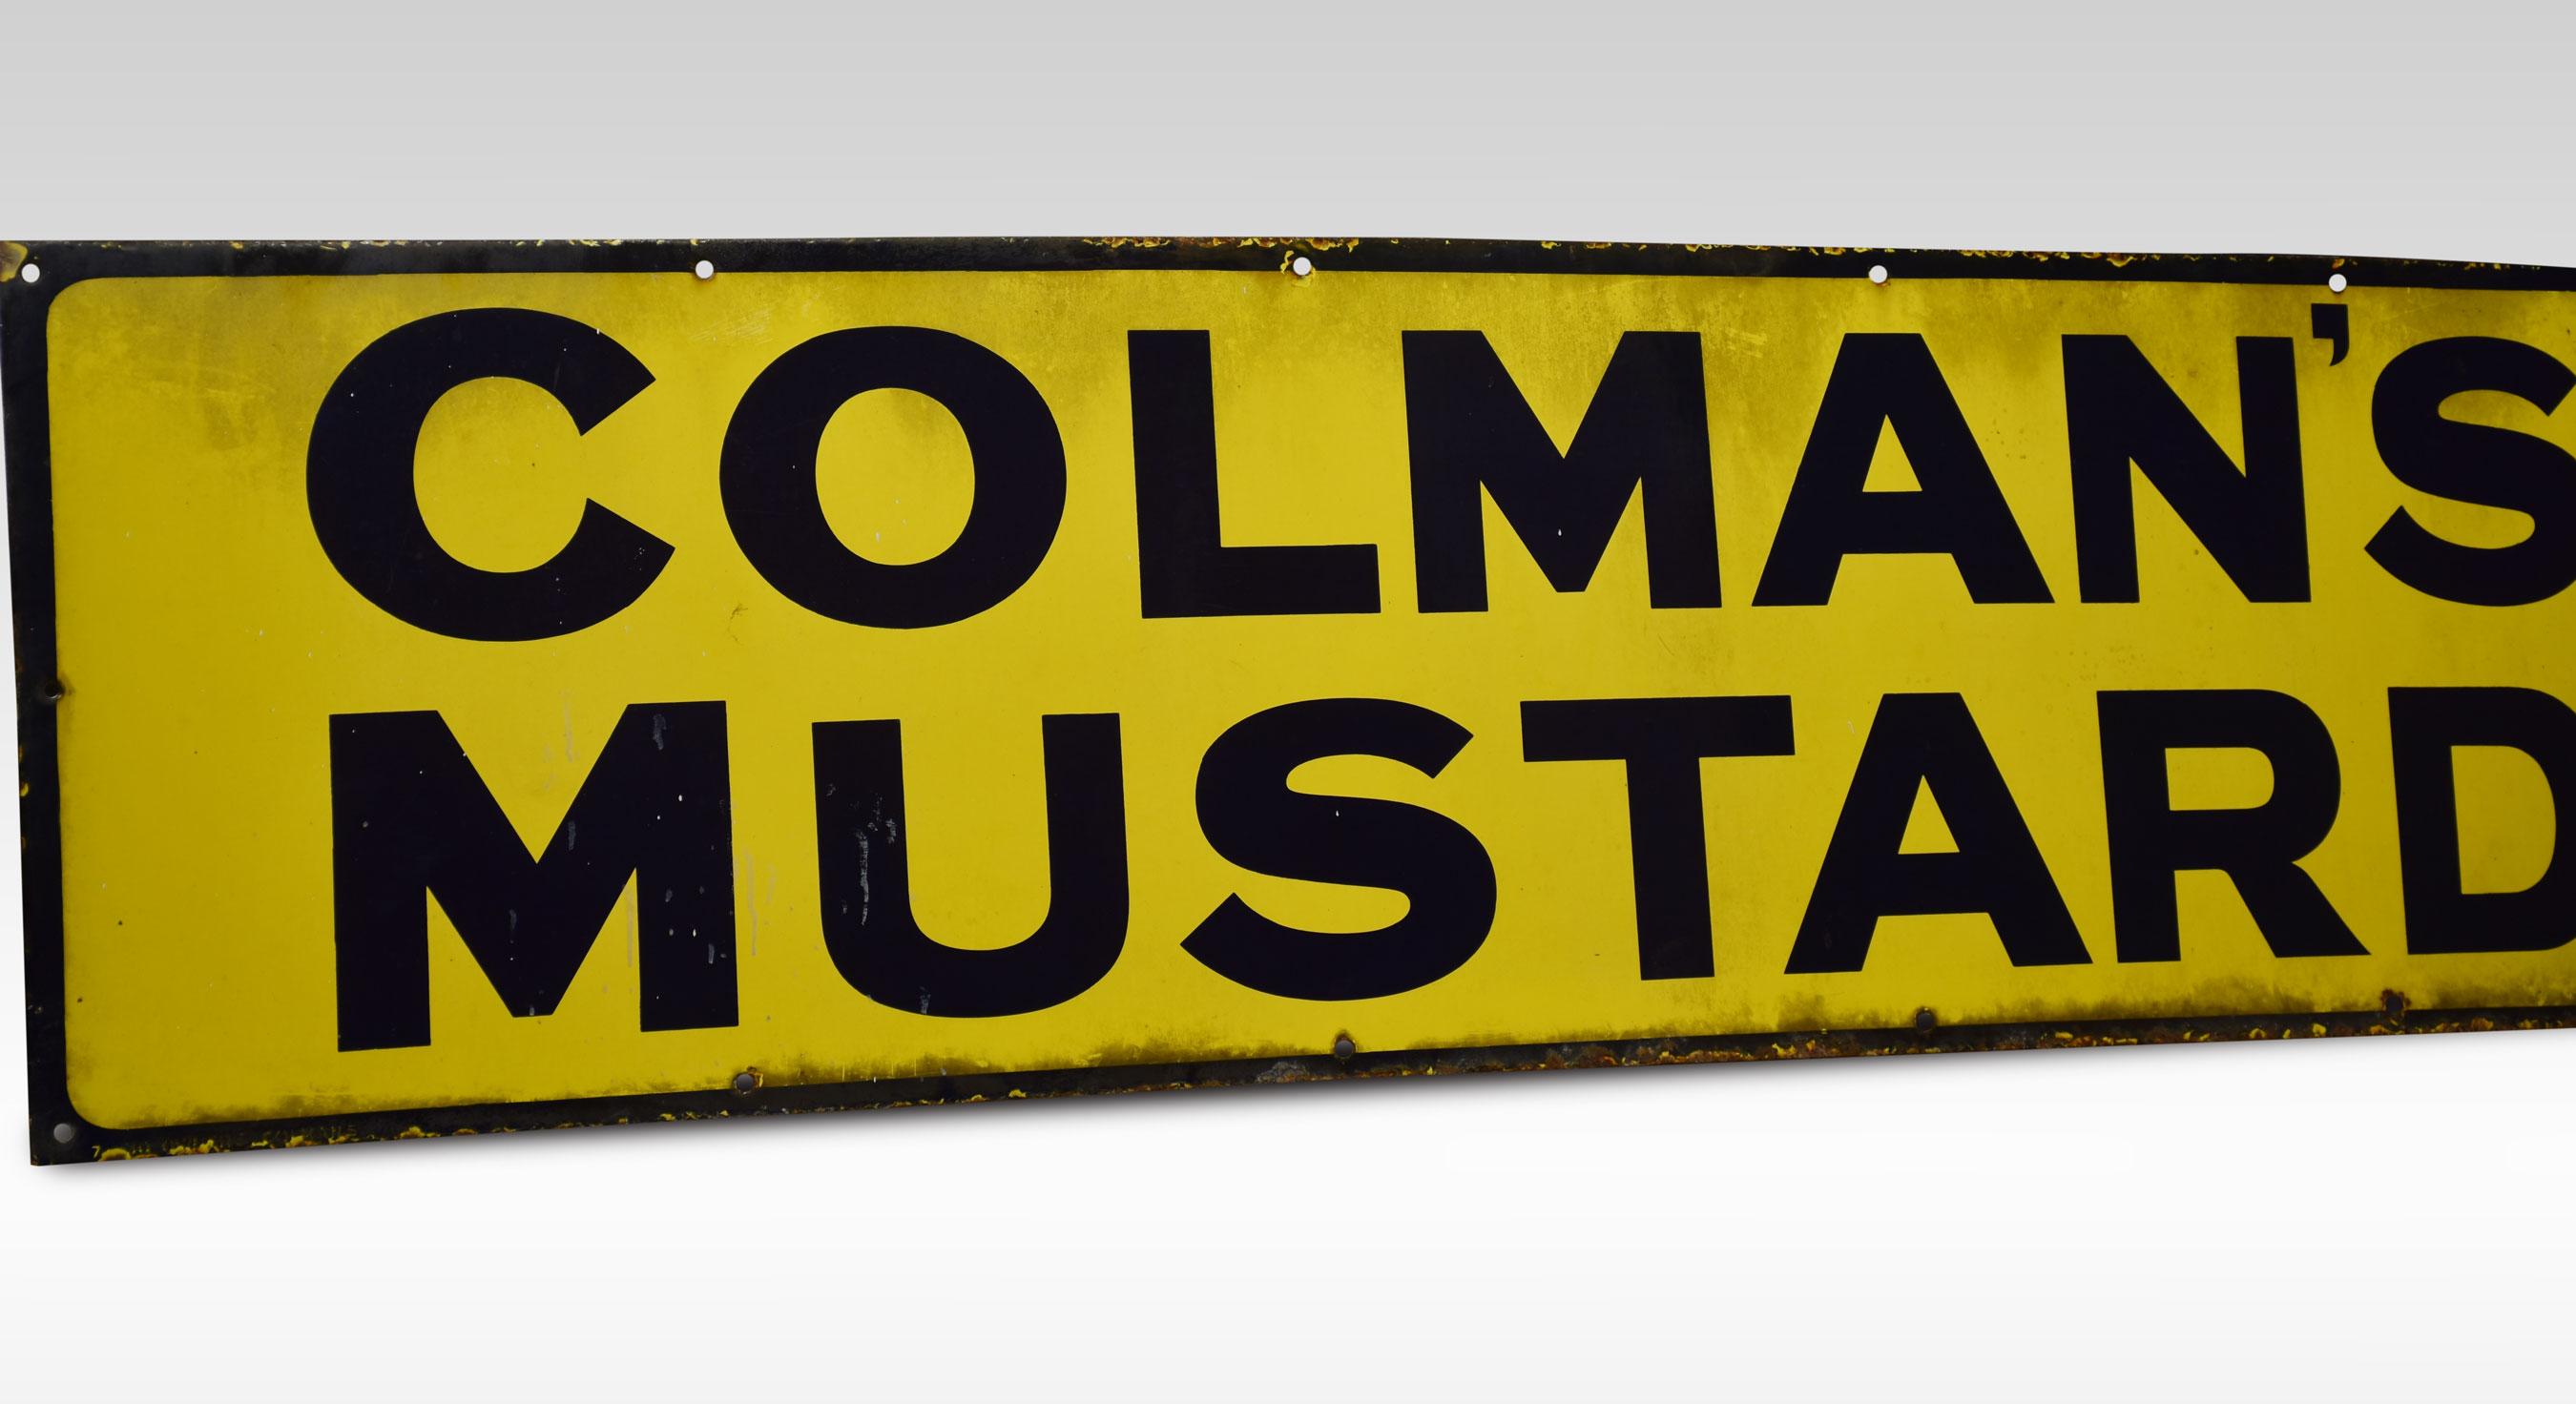 Emailleschild für Colman's Mustard, rechteckige Form, blau und gelb emailliert.
Abmessungen
Höhe 16 Zoll
Breite 62,5 Zoll
Tiefe 0,5 Zoll.